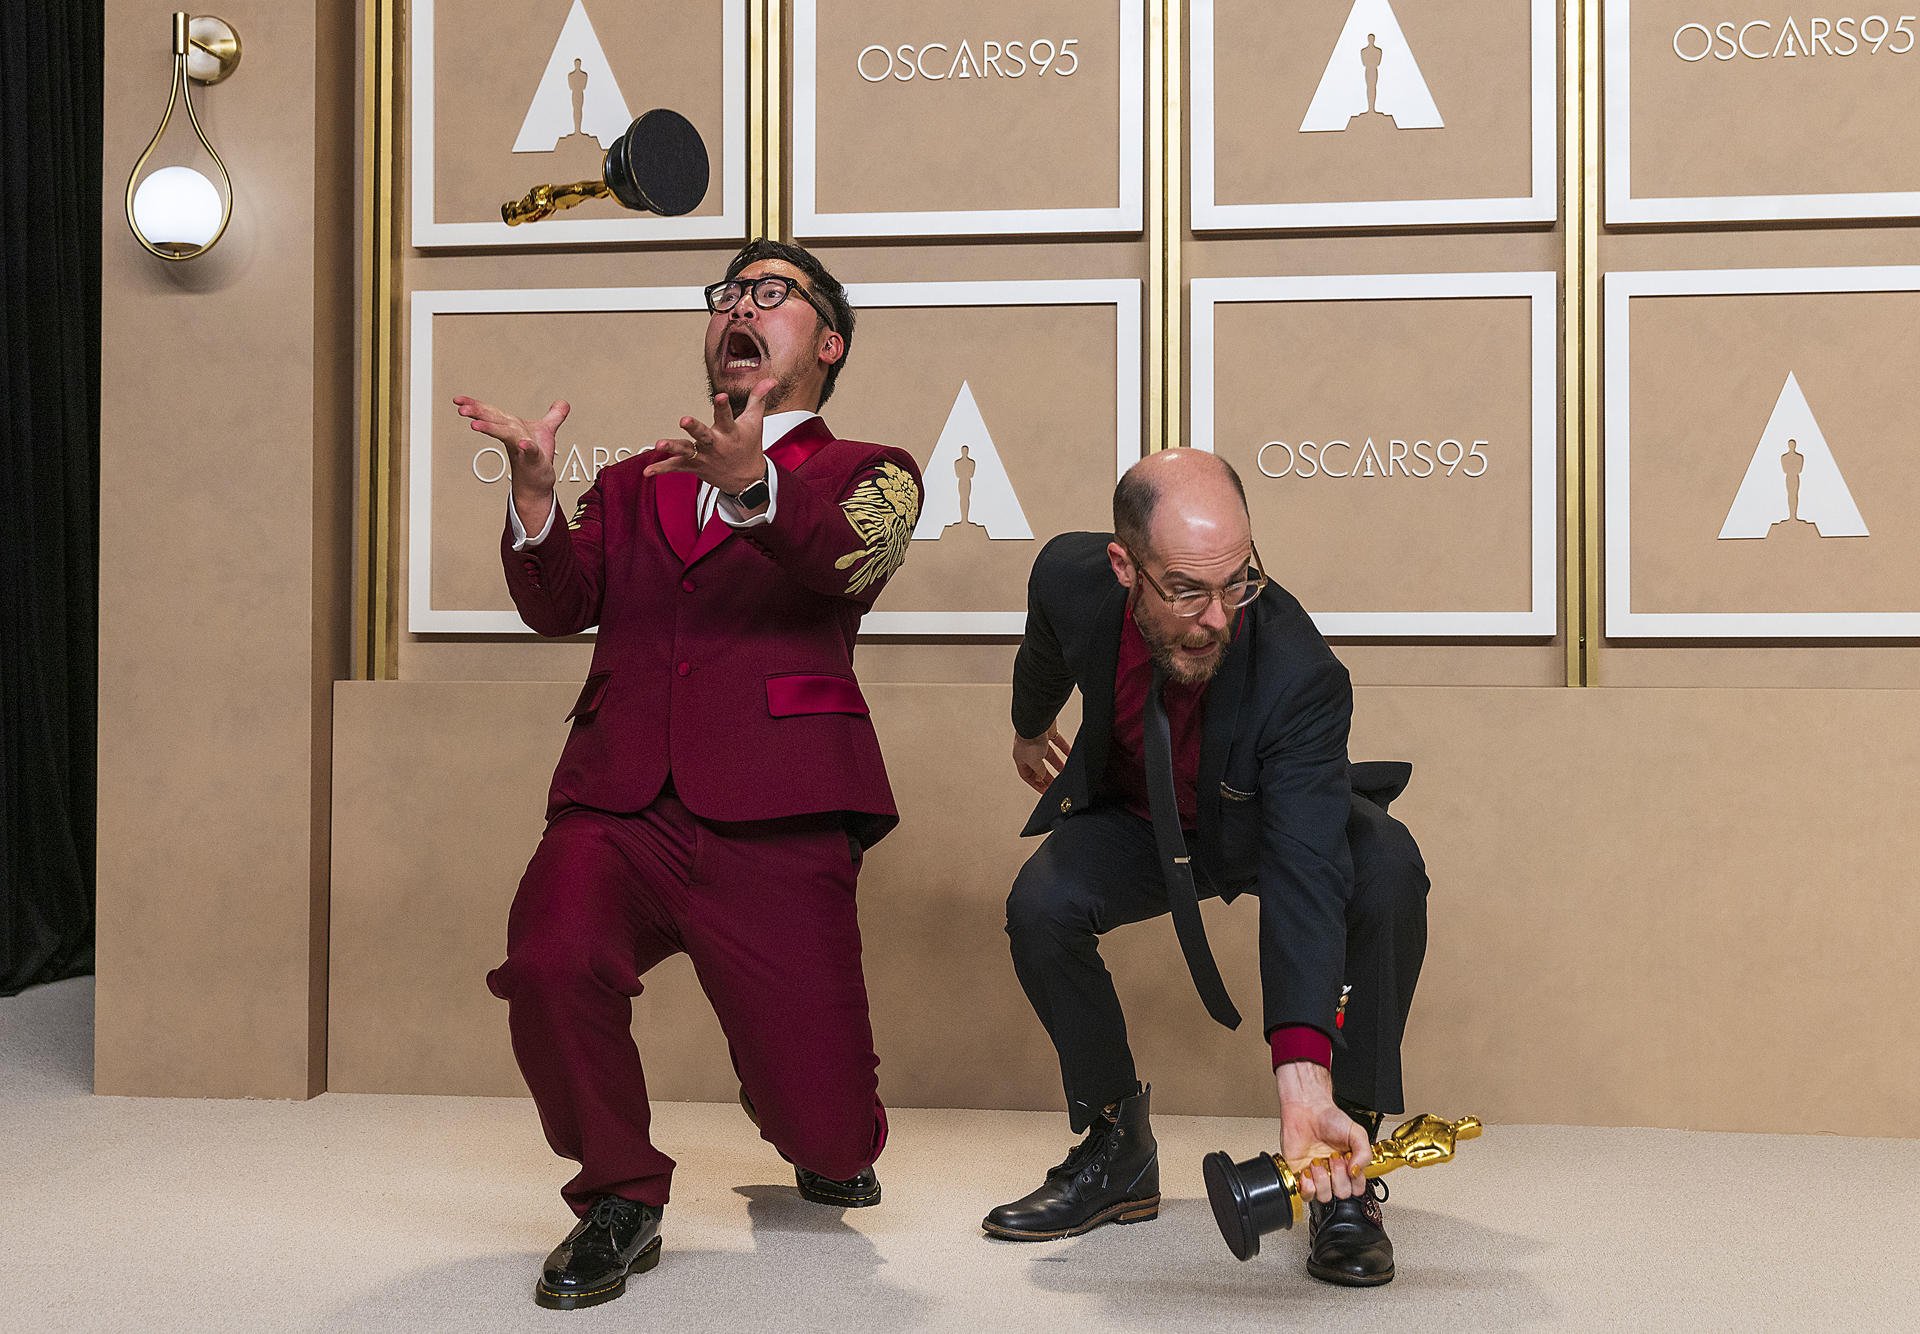 Los premios Oscar están muriendo: una ceremonia naftalínica en la era de TikTok